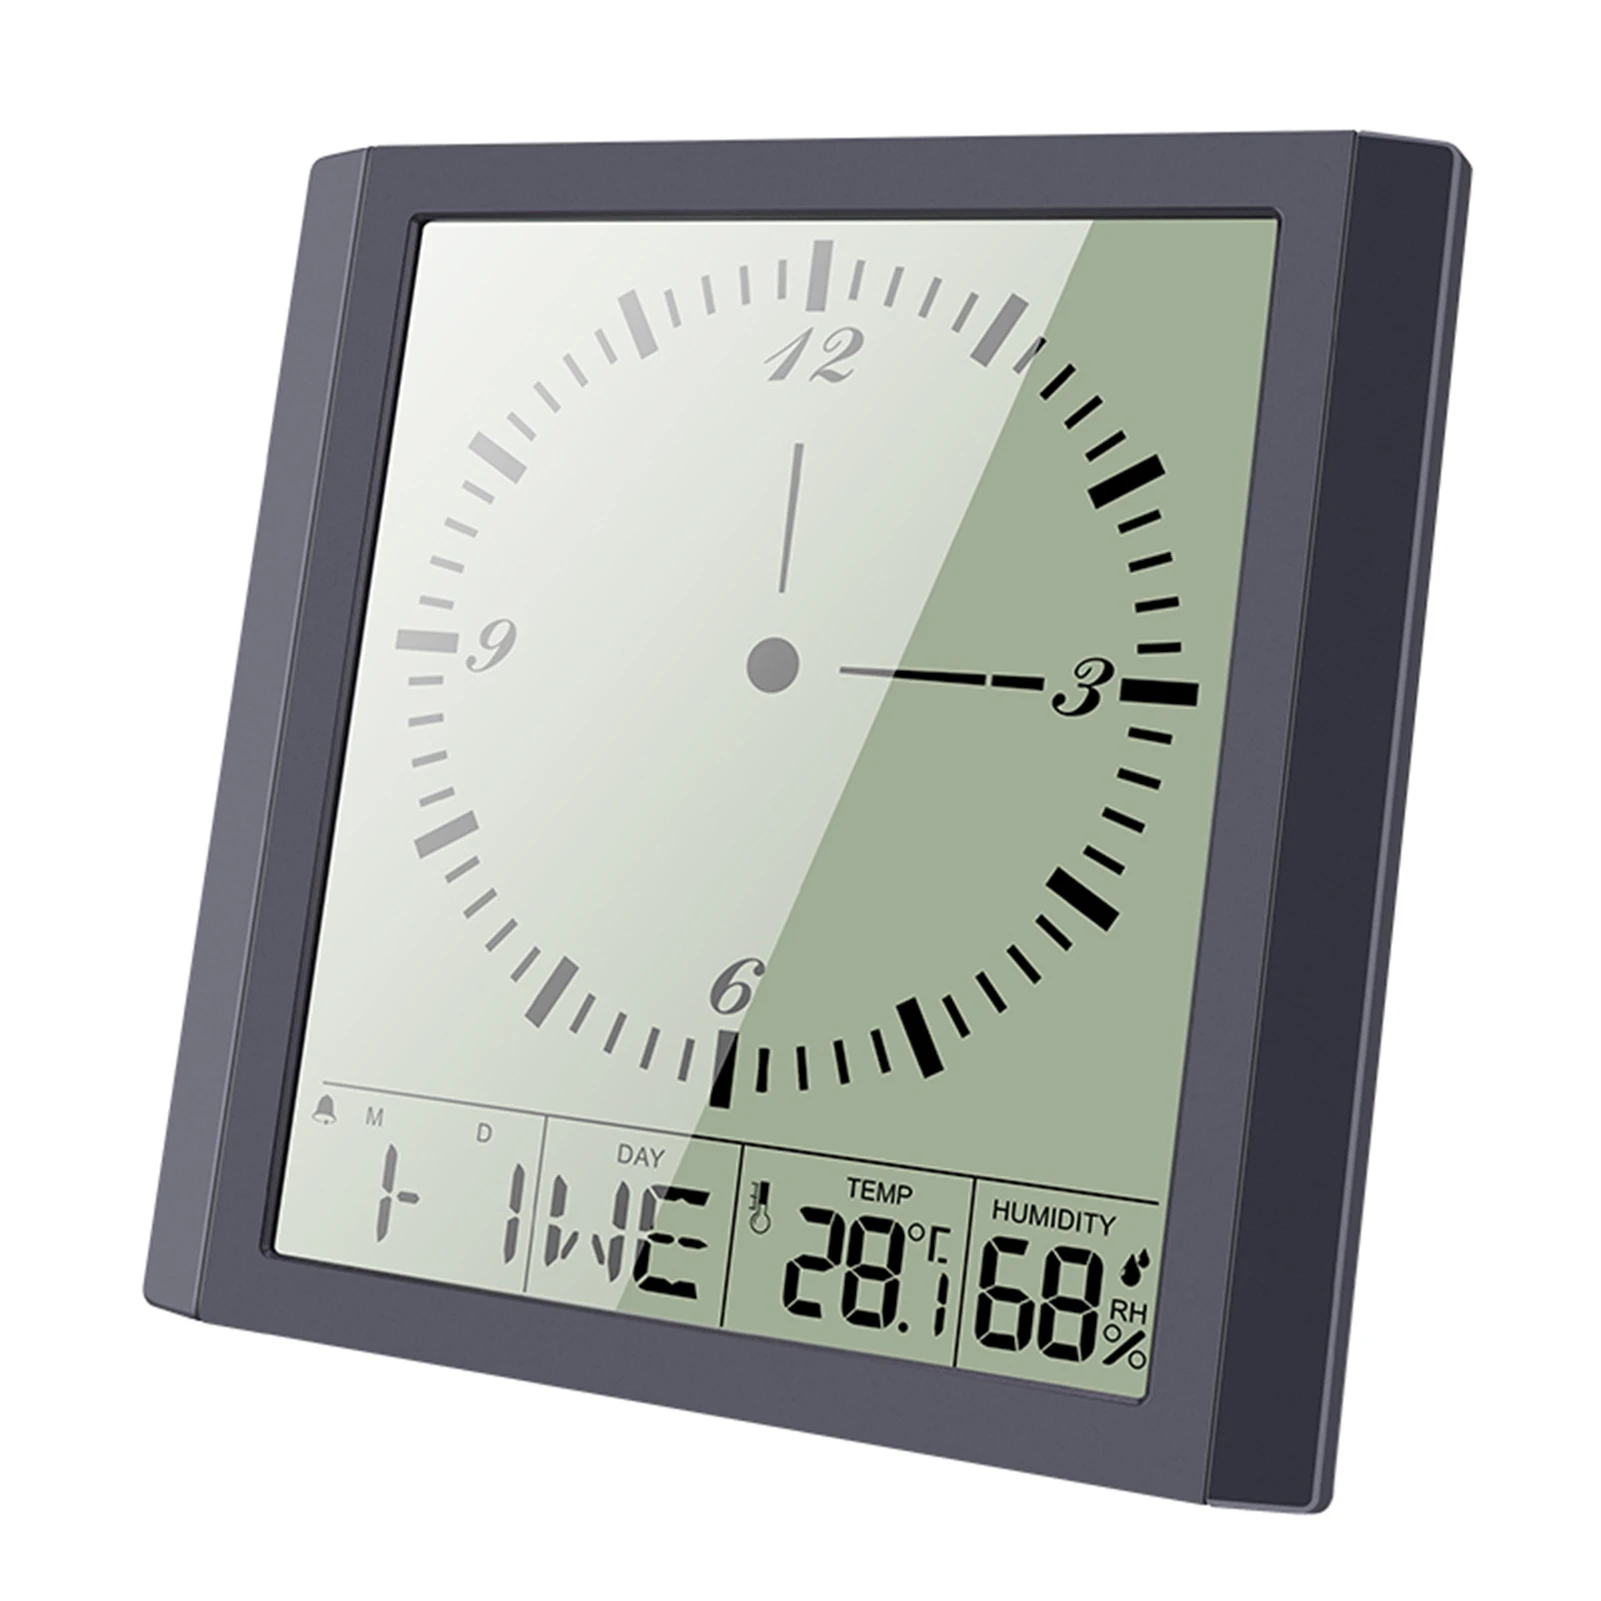 

Цифровой Термогигрометр KKmoon, настенные квадратные часы с календарем, будильником и повтором сигнала, комнатный Индикатор температуры и вла...